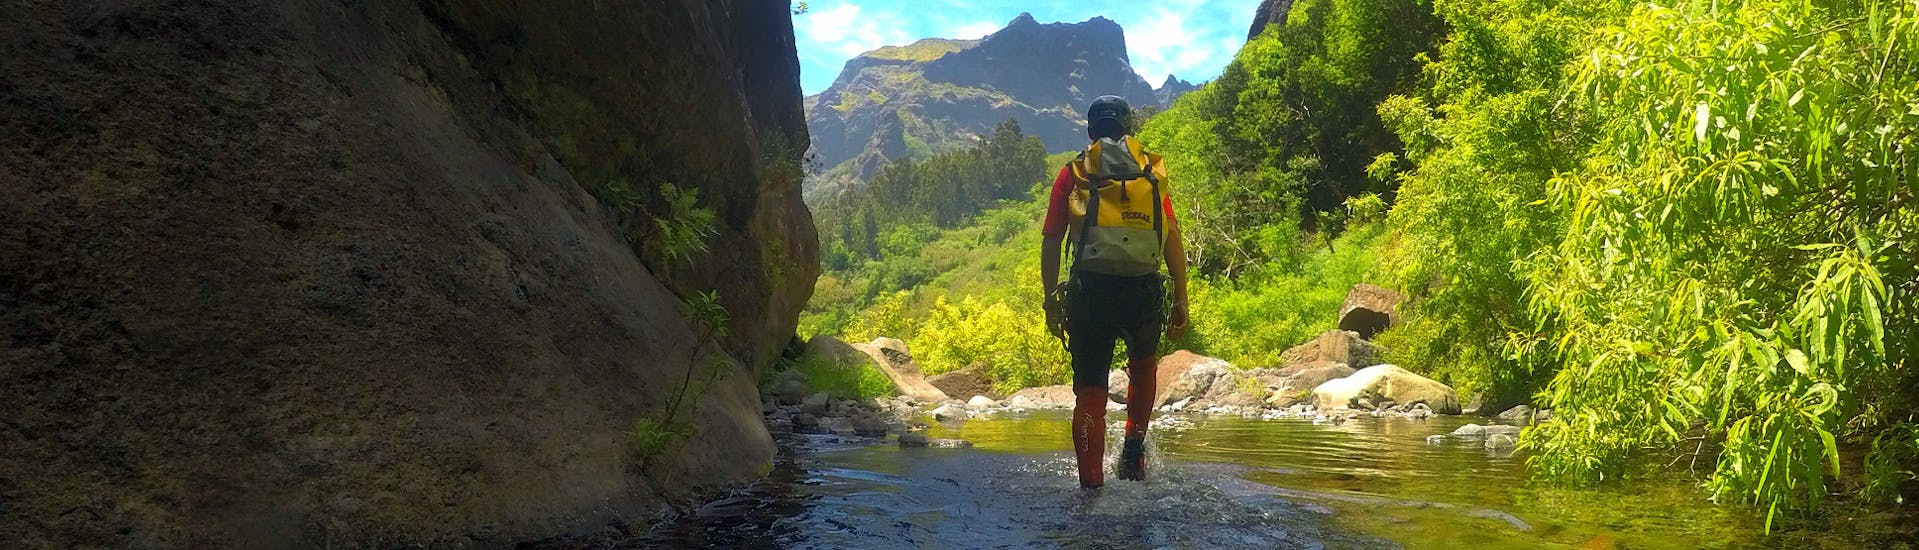 Una pareja admira la impresionante vista durante el descenso de barrancos Sportive & Adventurous Canyoning in Madeira - Take your Wildcard with Lokoloko Madeira.